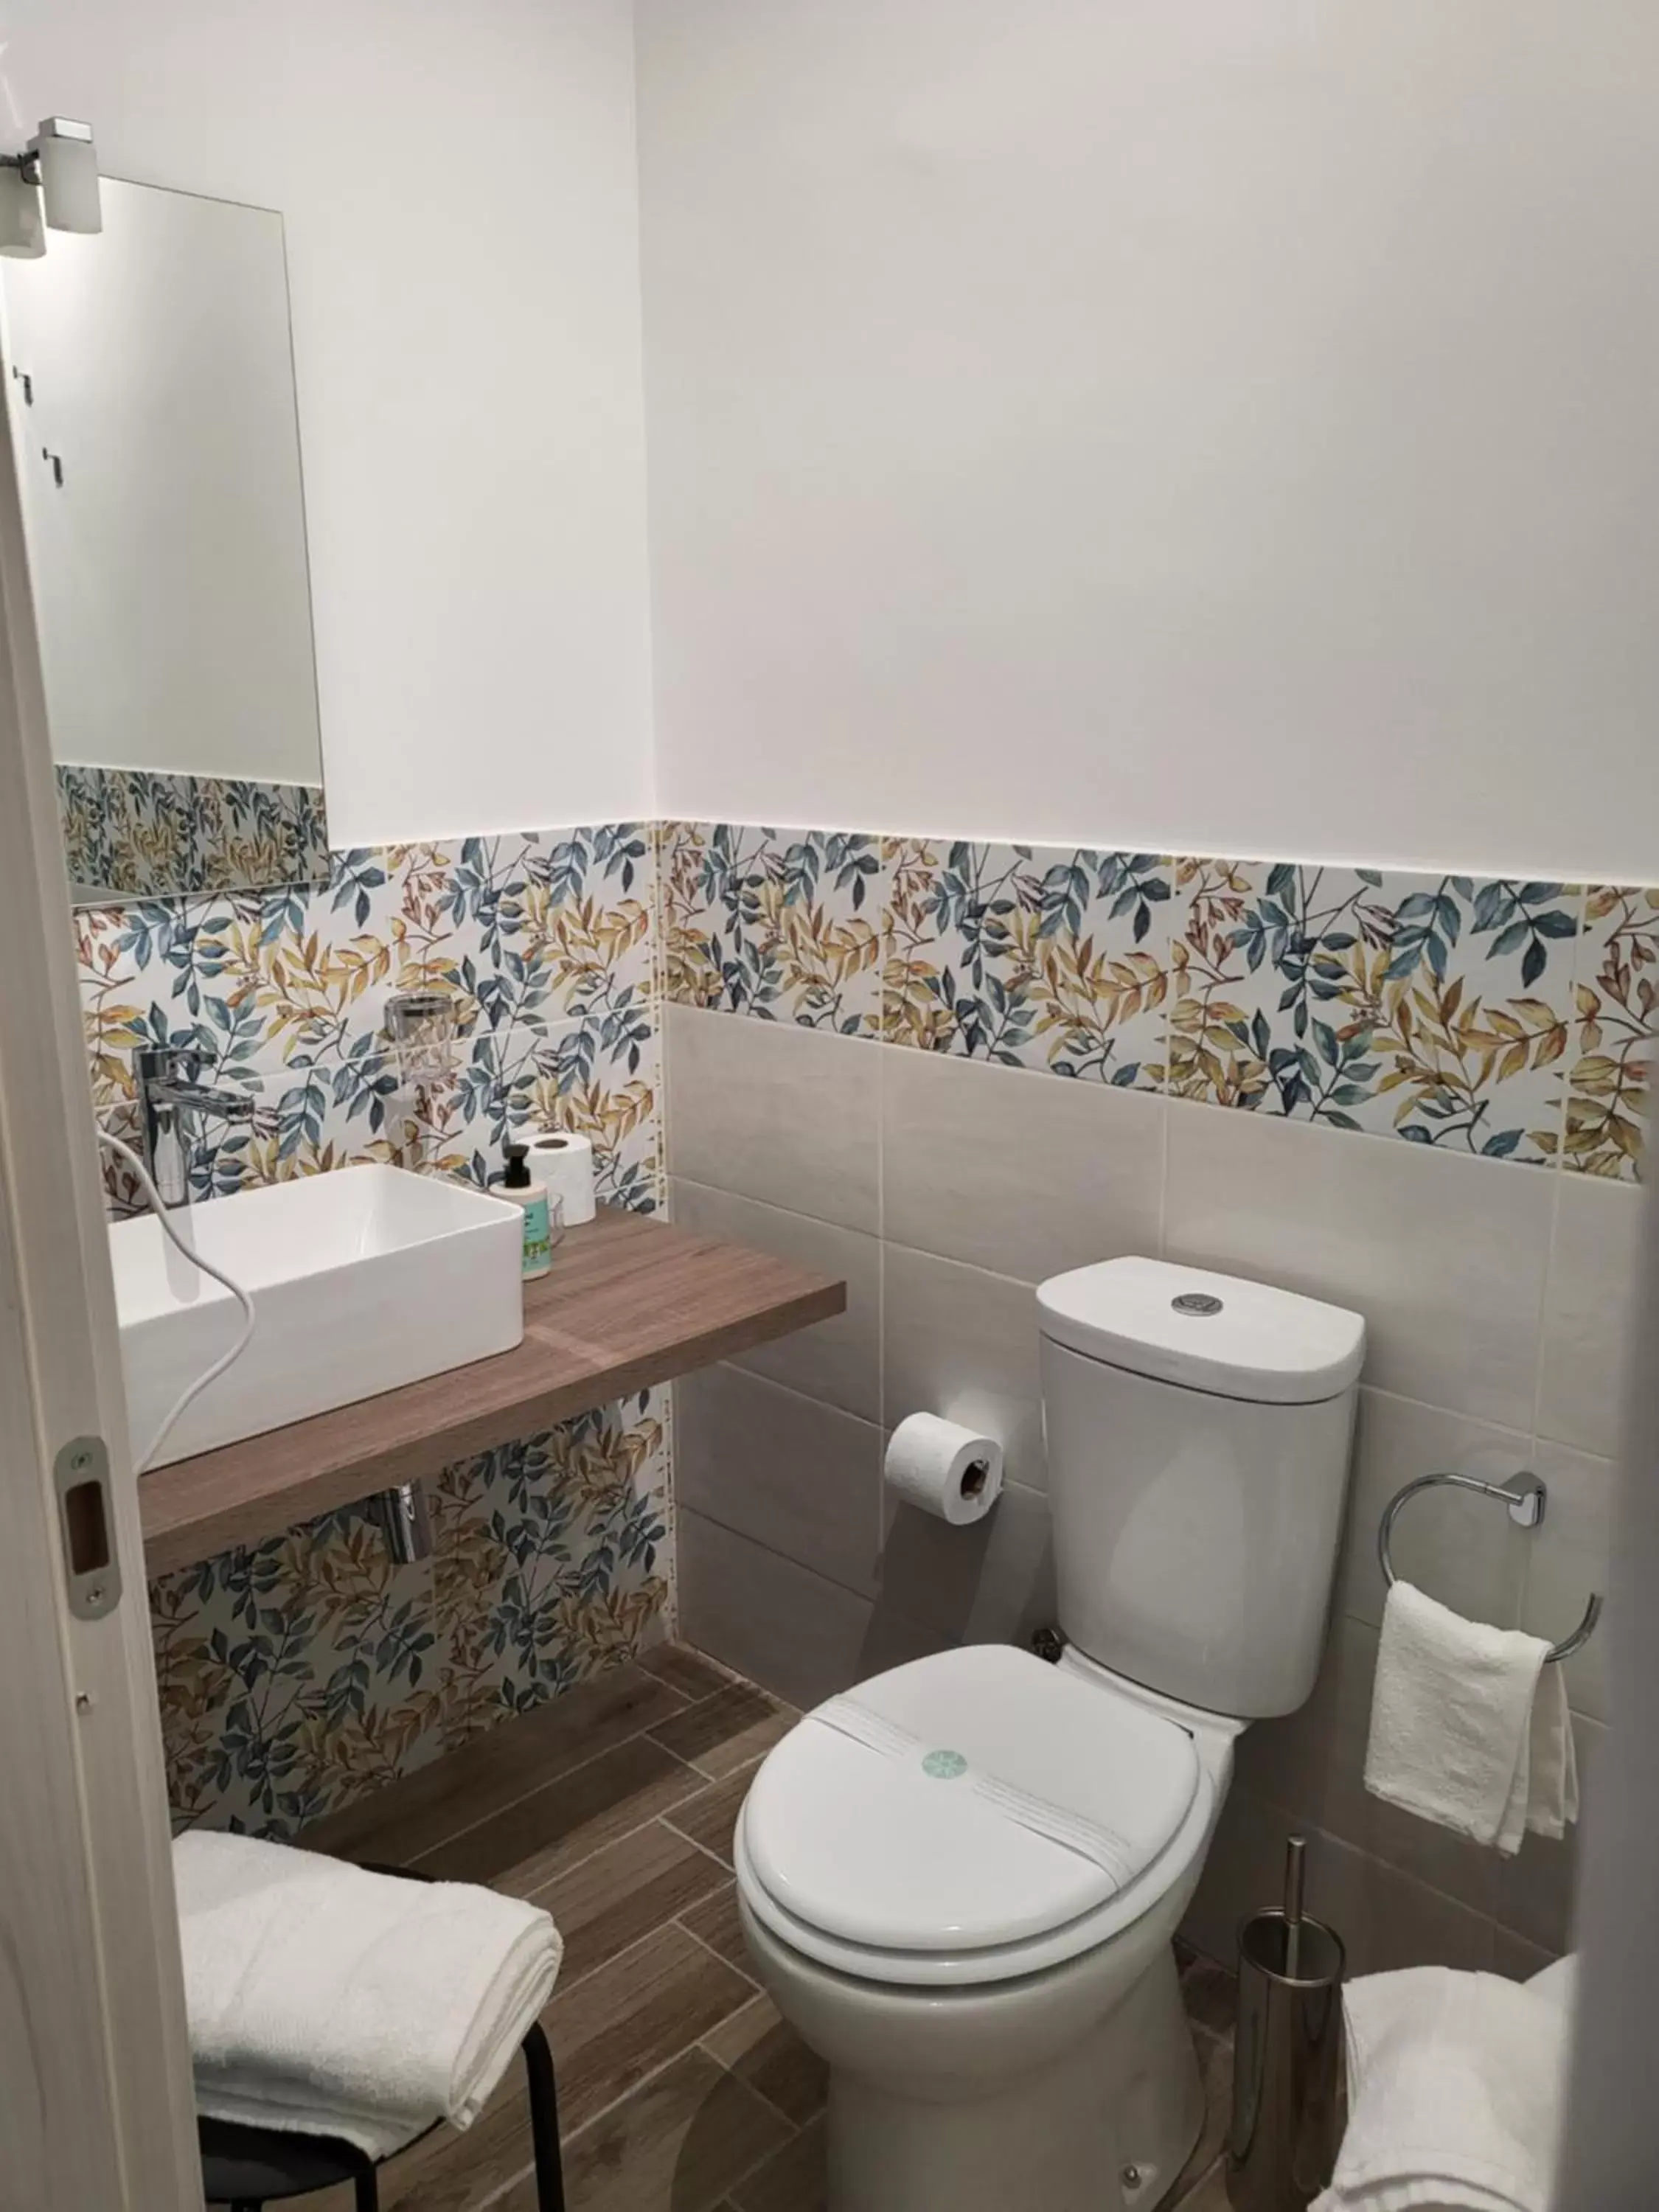 Bathroom in Sicula home